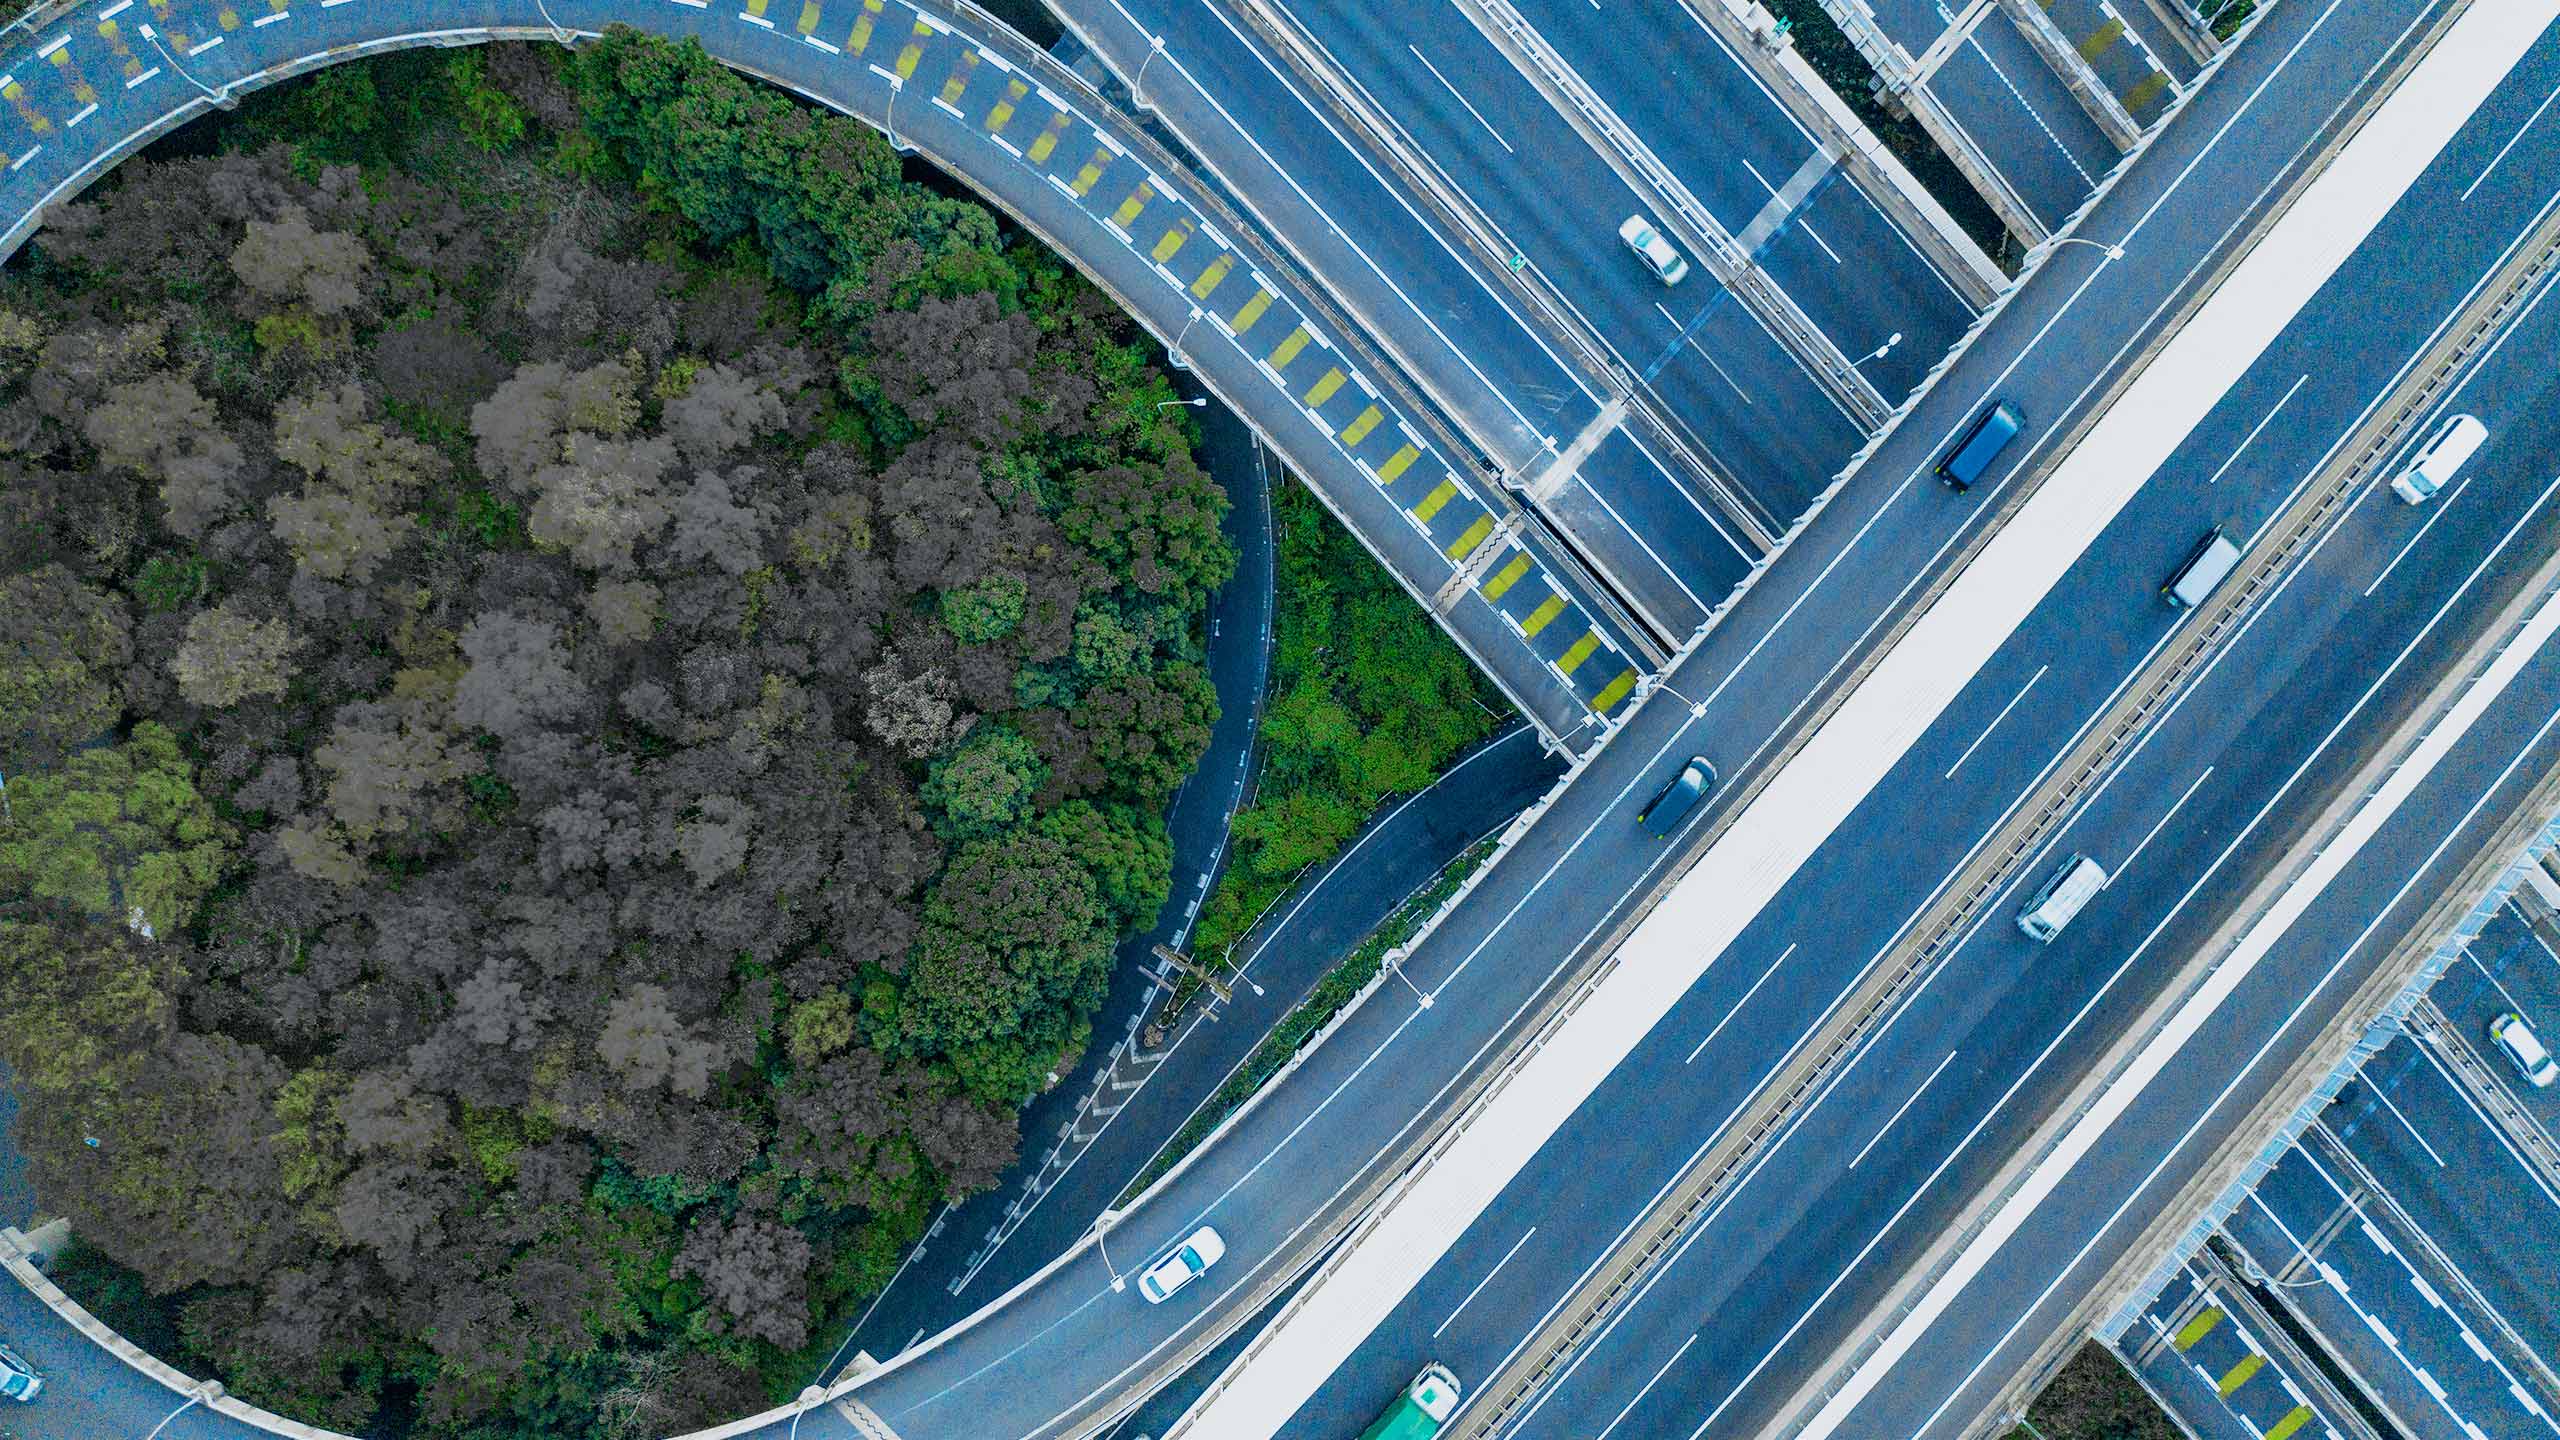 Headerbild zum Blogartikel "Lieferzeit und Termintreue verbessern mit Process Mining": zeigt Straßenverkehr von oben